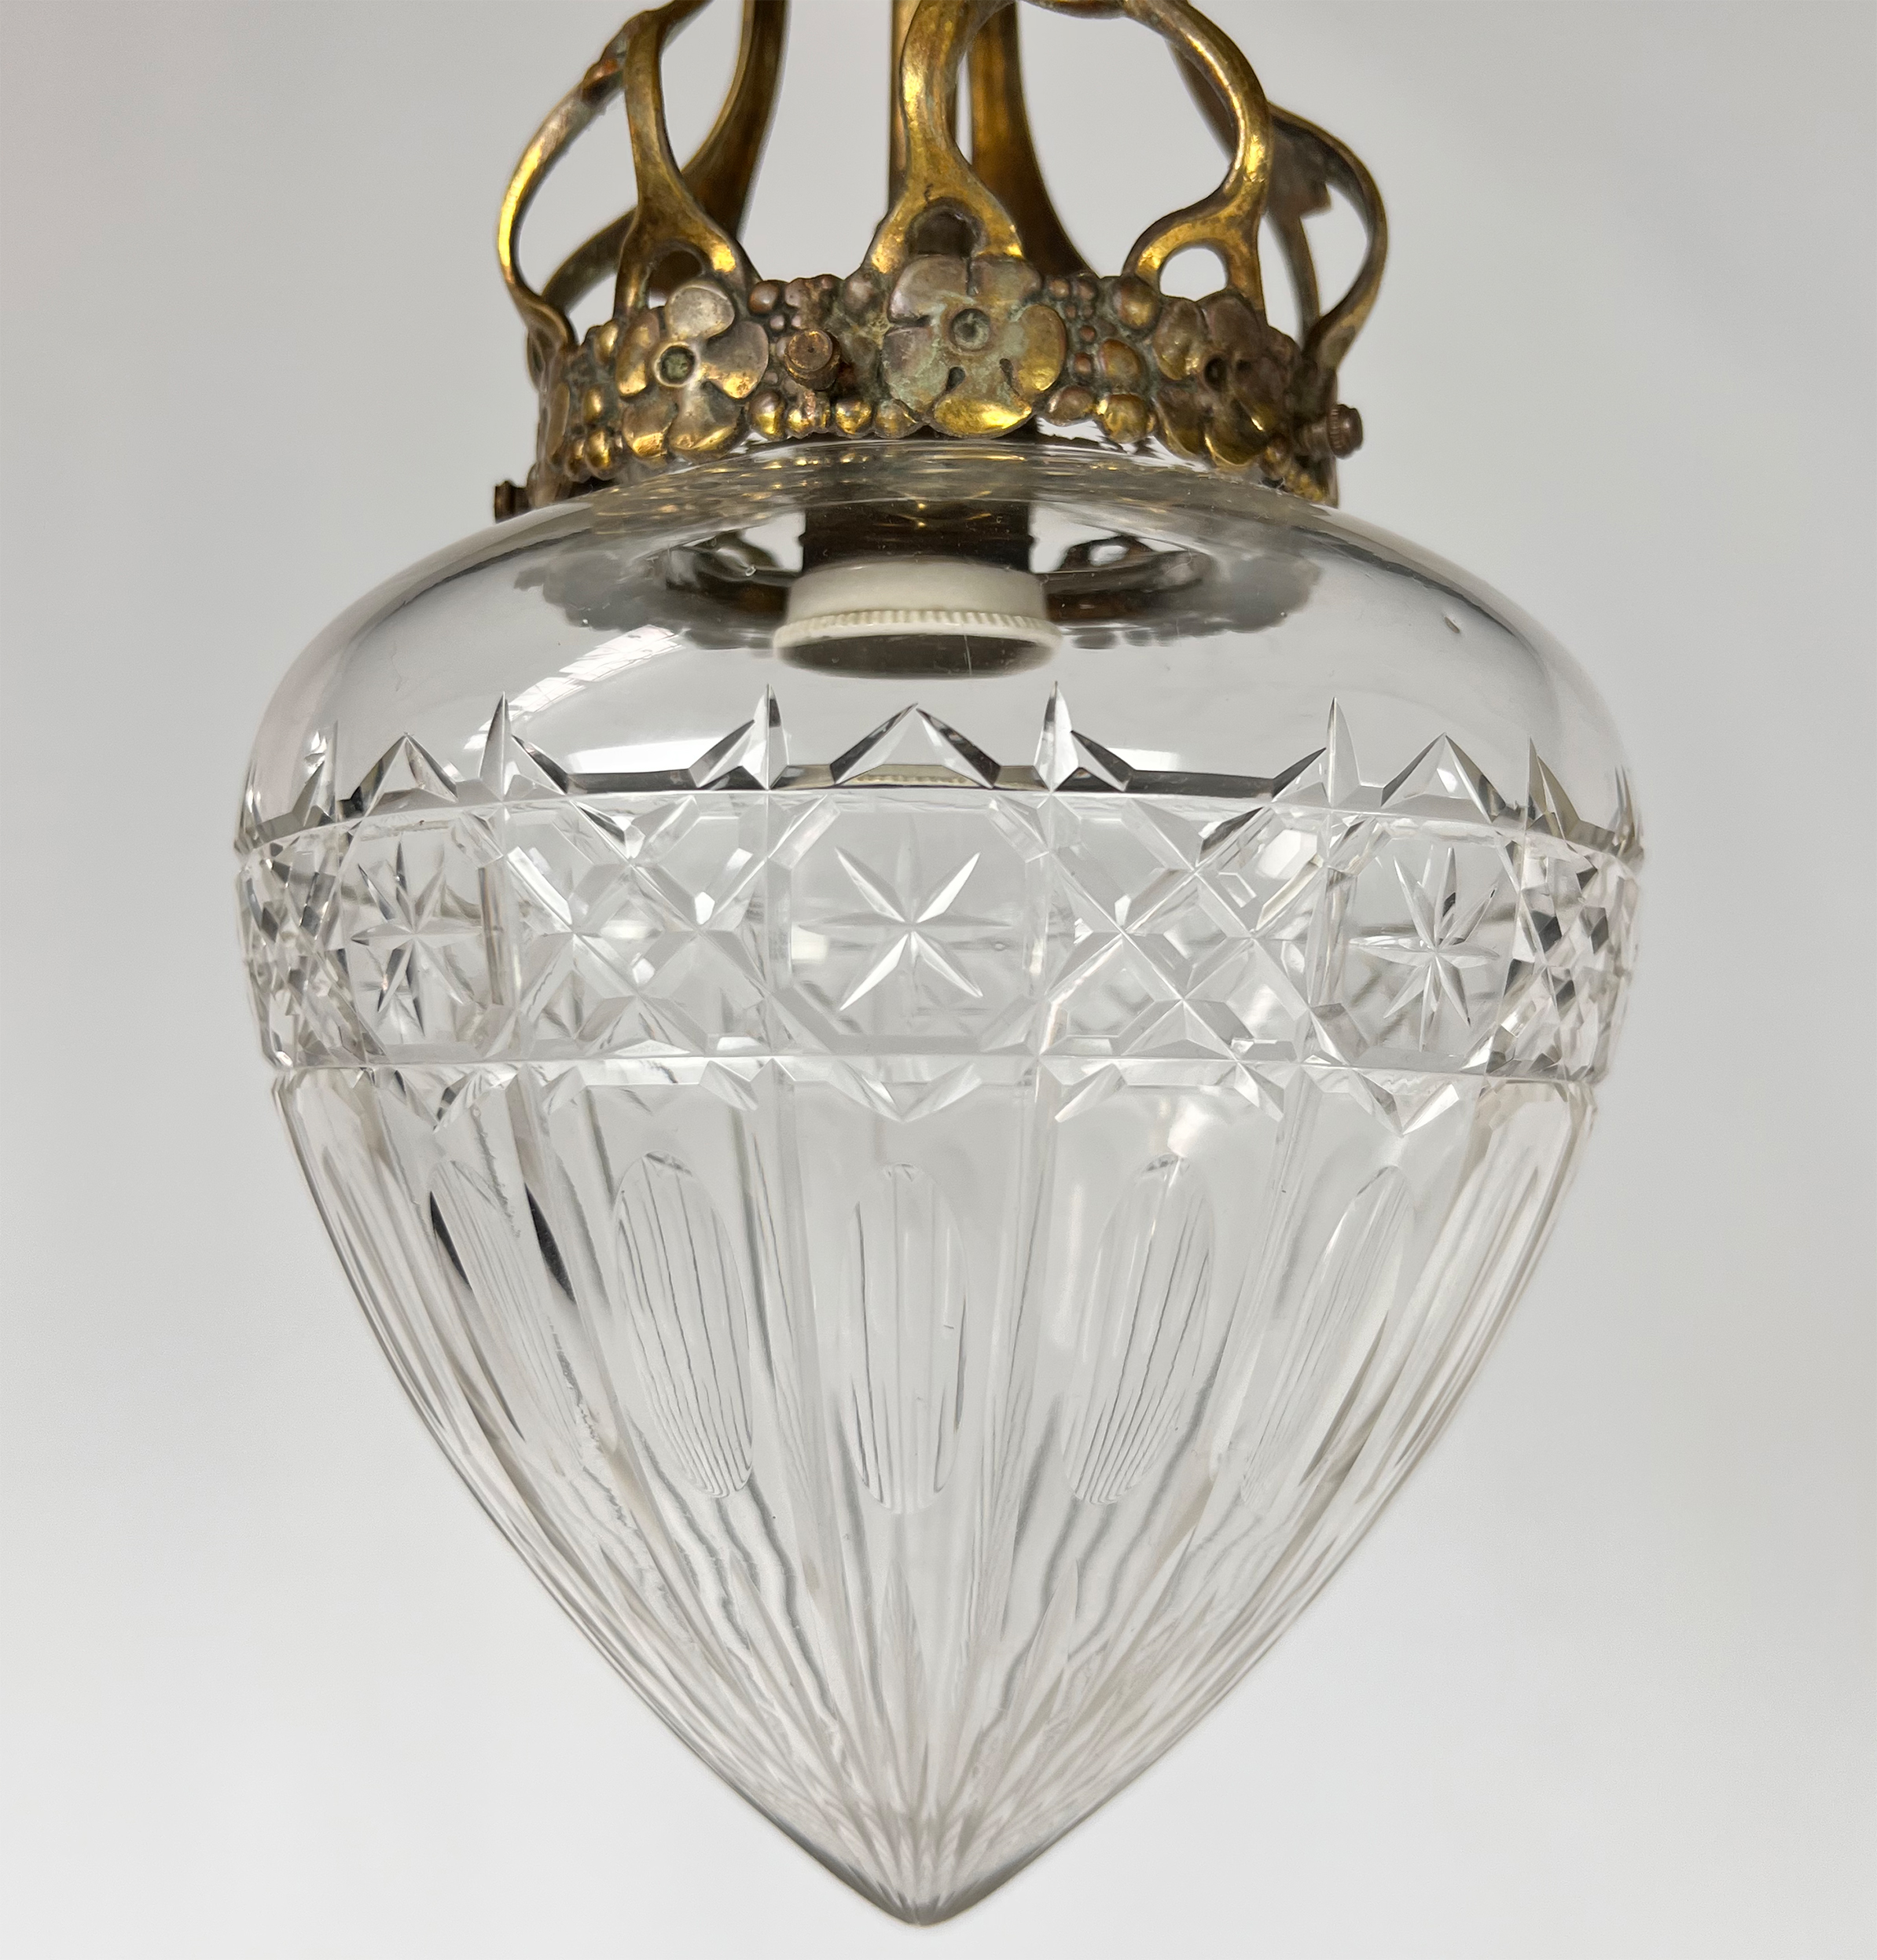 Antique Belgium Art Nouveau Ceiling Lamp, 1940s